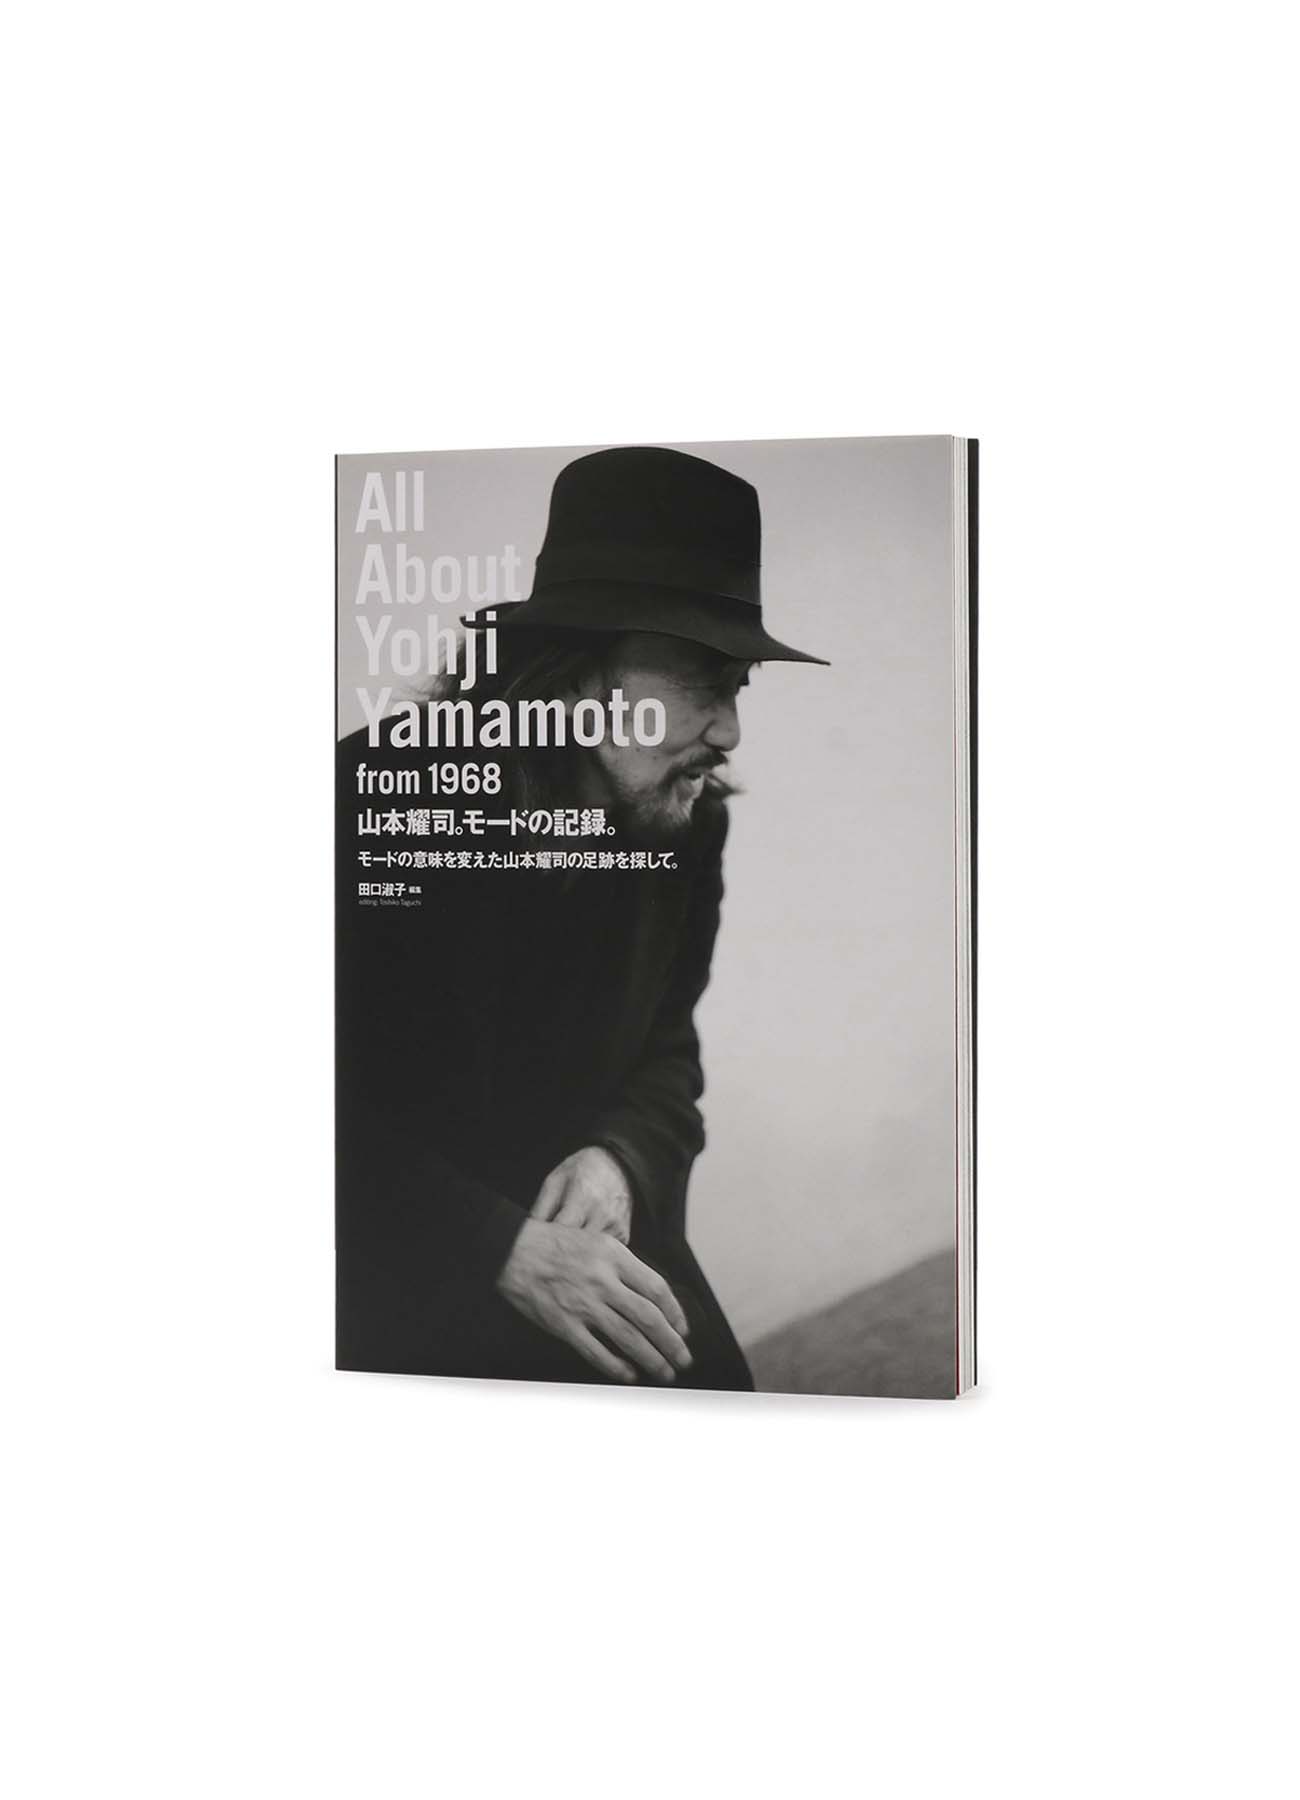 All About Yohji Yamamoto